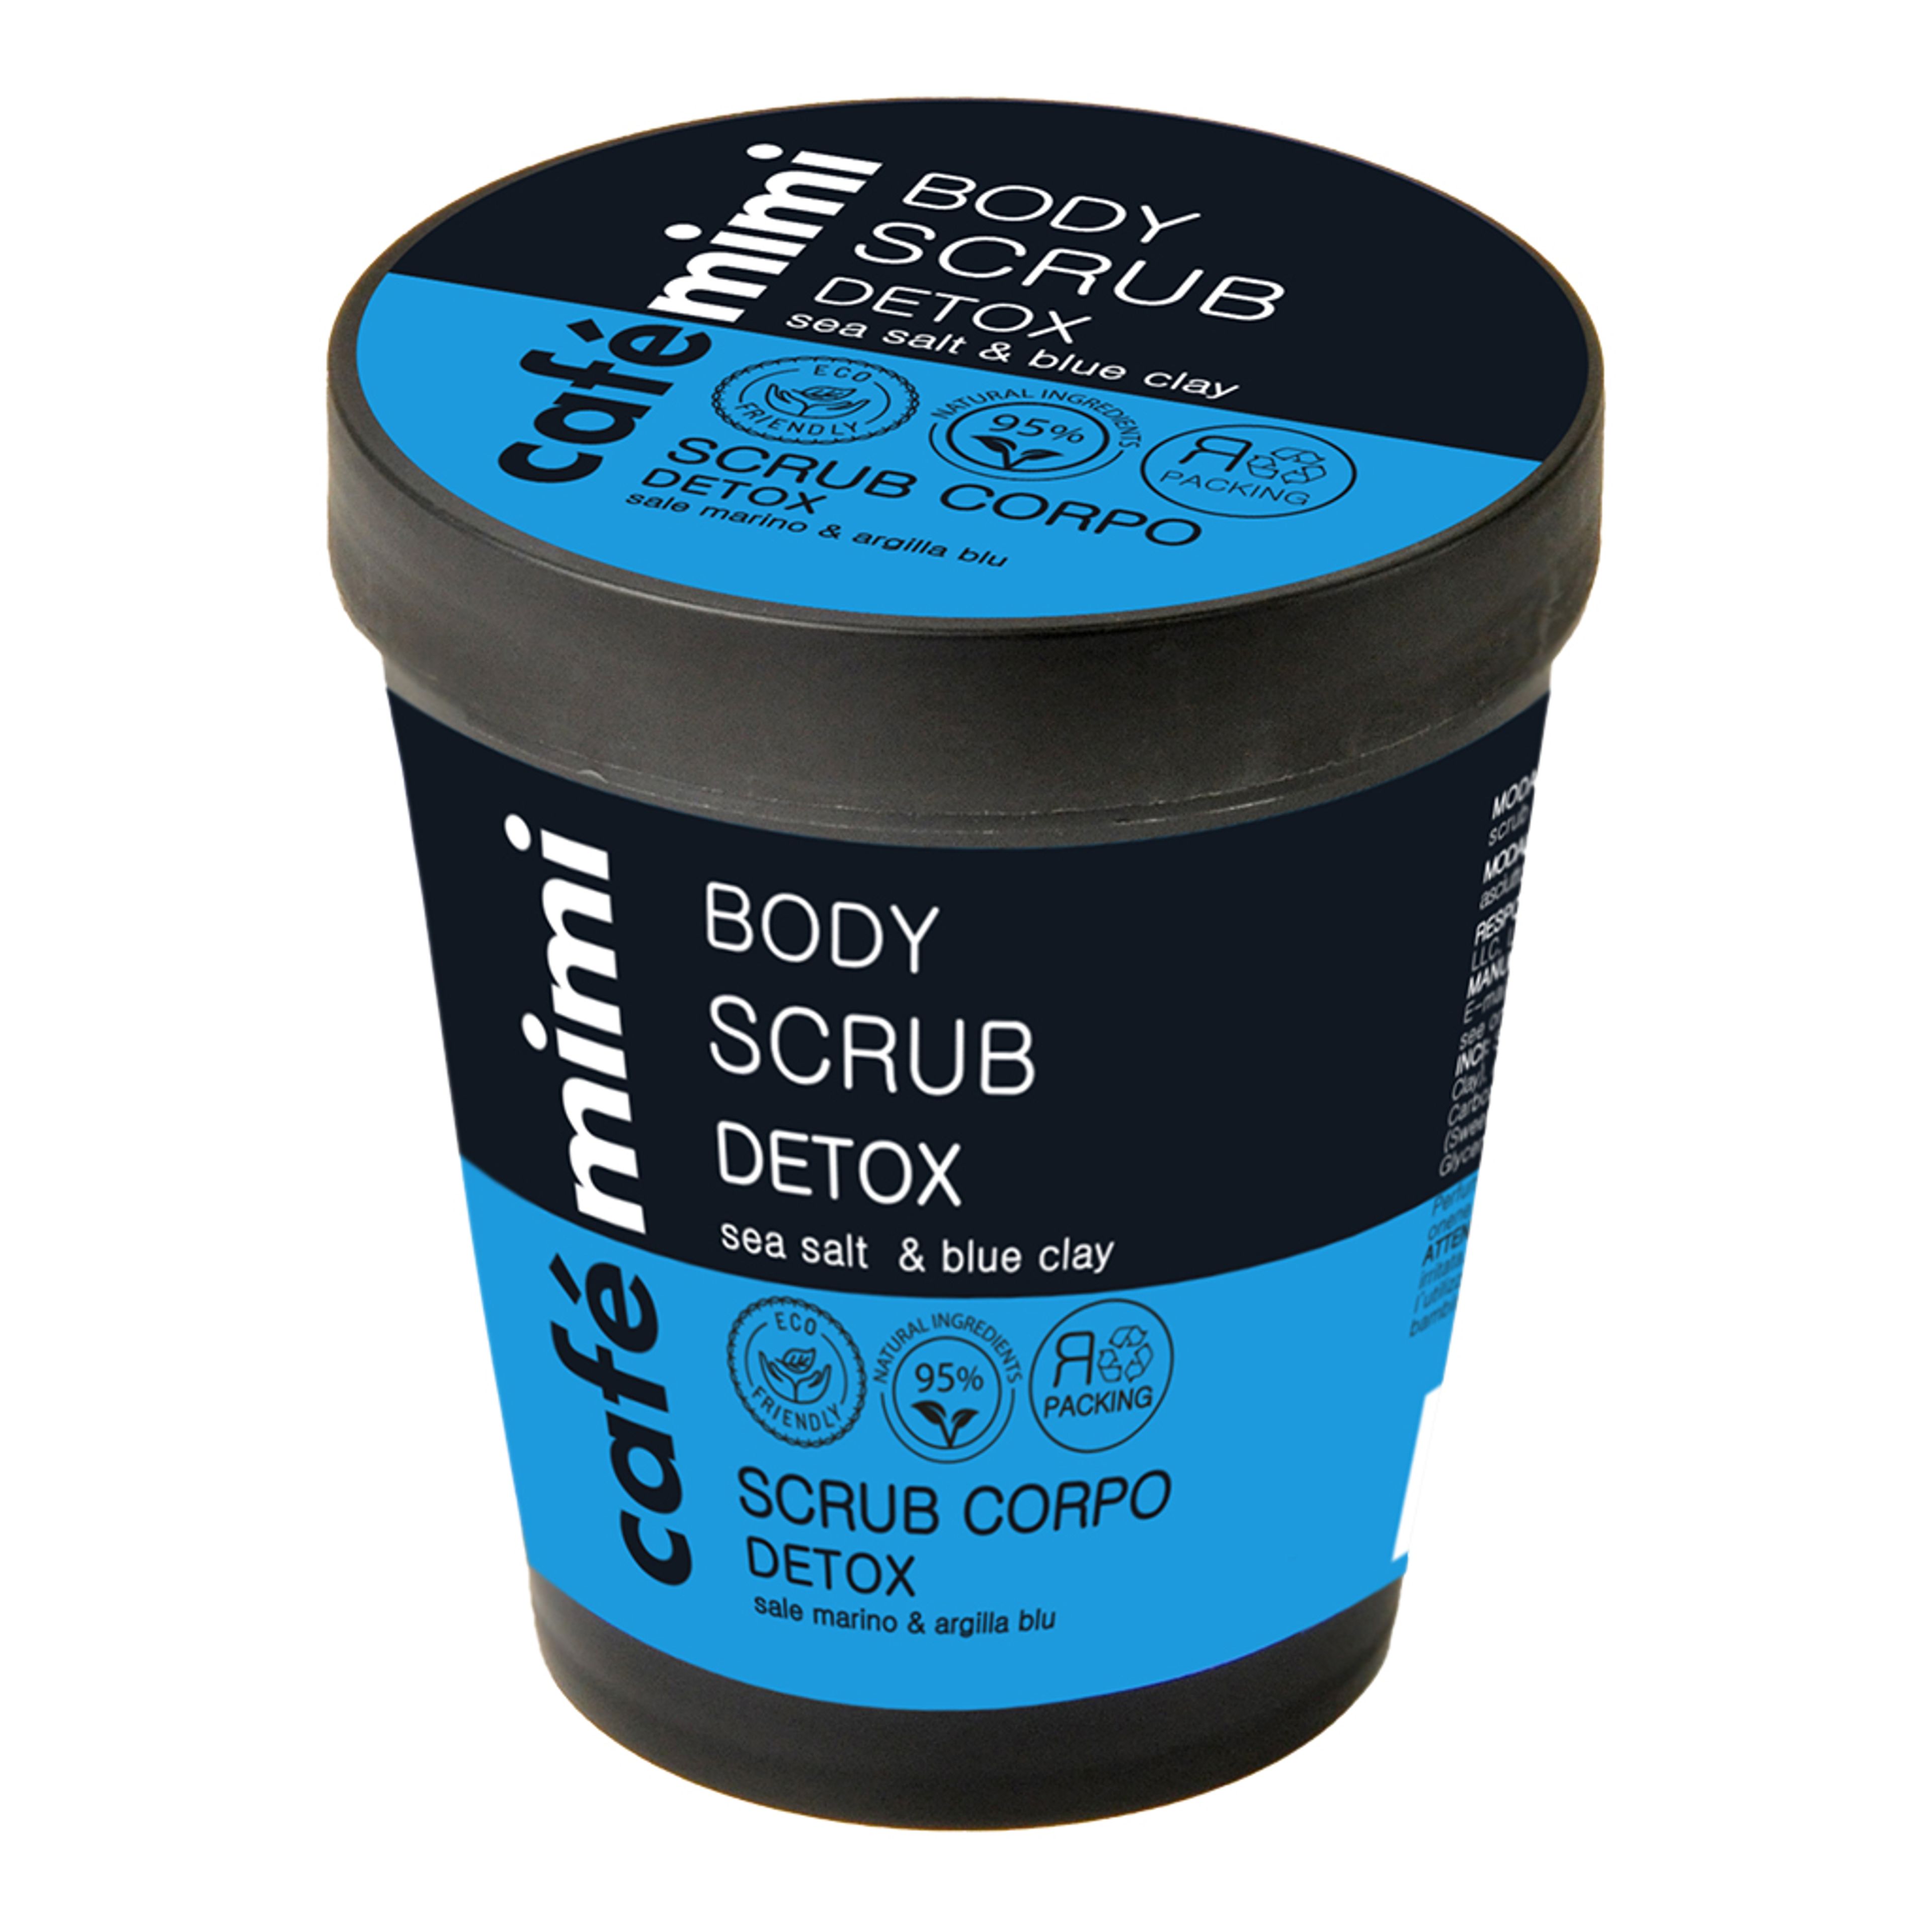 Scrub Corpo Detox
sale Marino & Argilla Blu Café Mimi 1